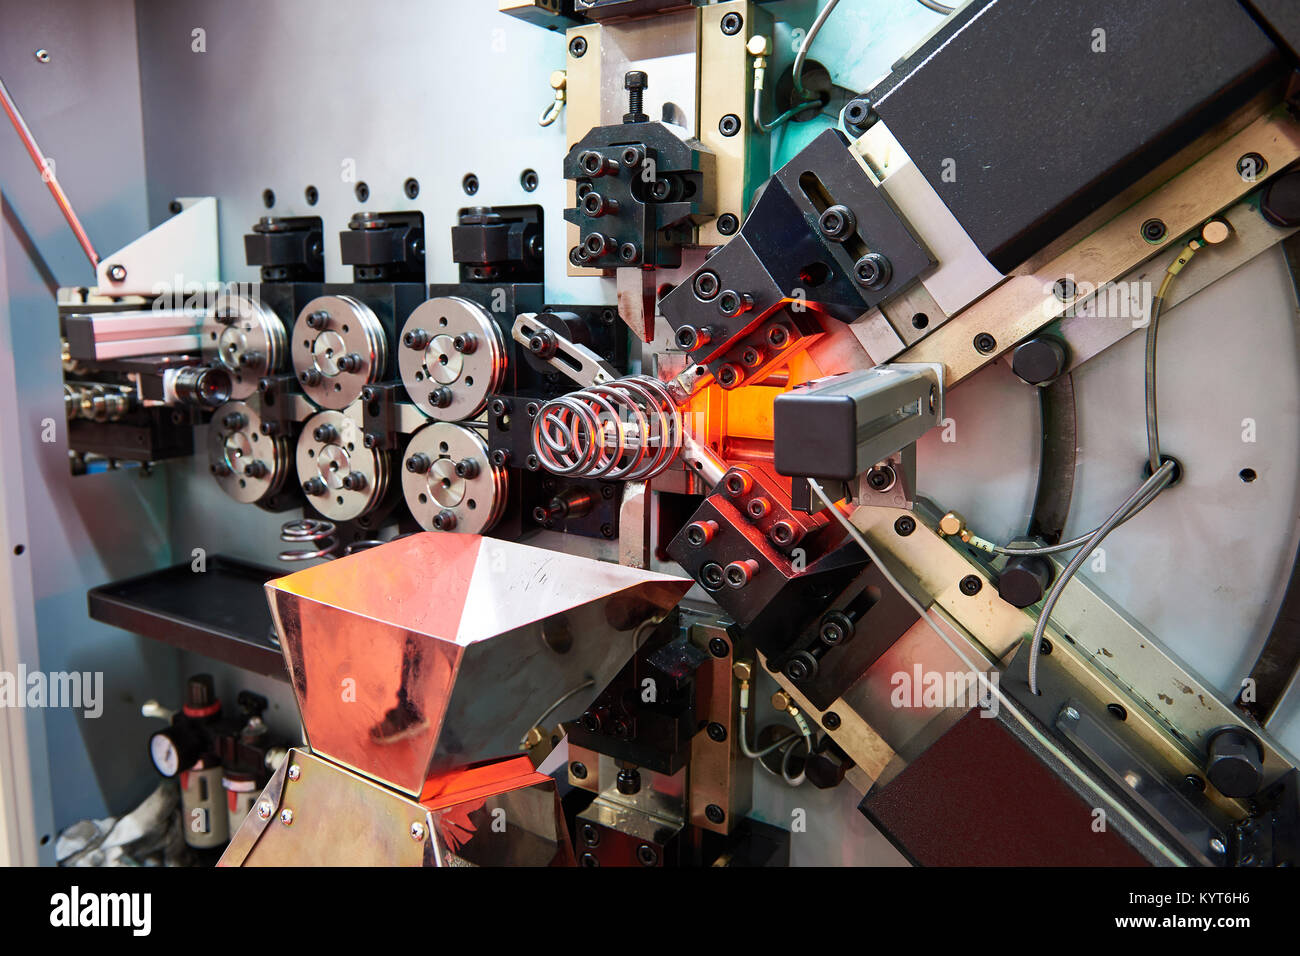 Cnc machine industrielle printemps Banque D'Images